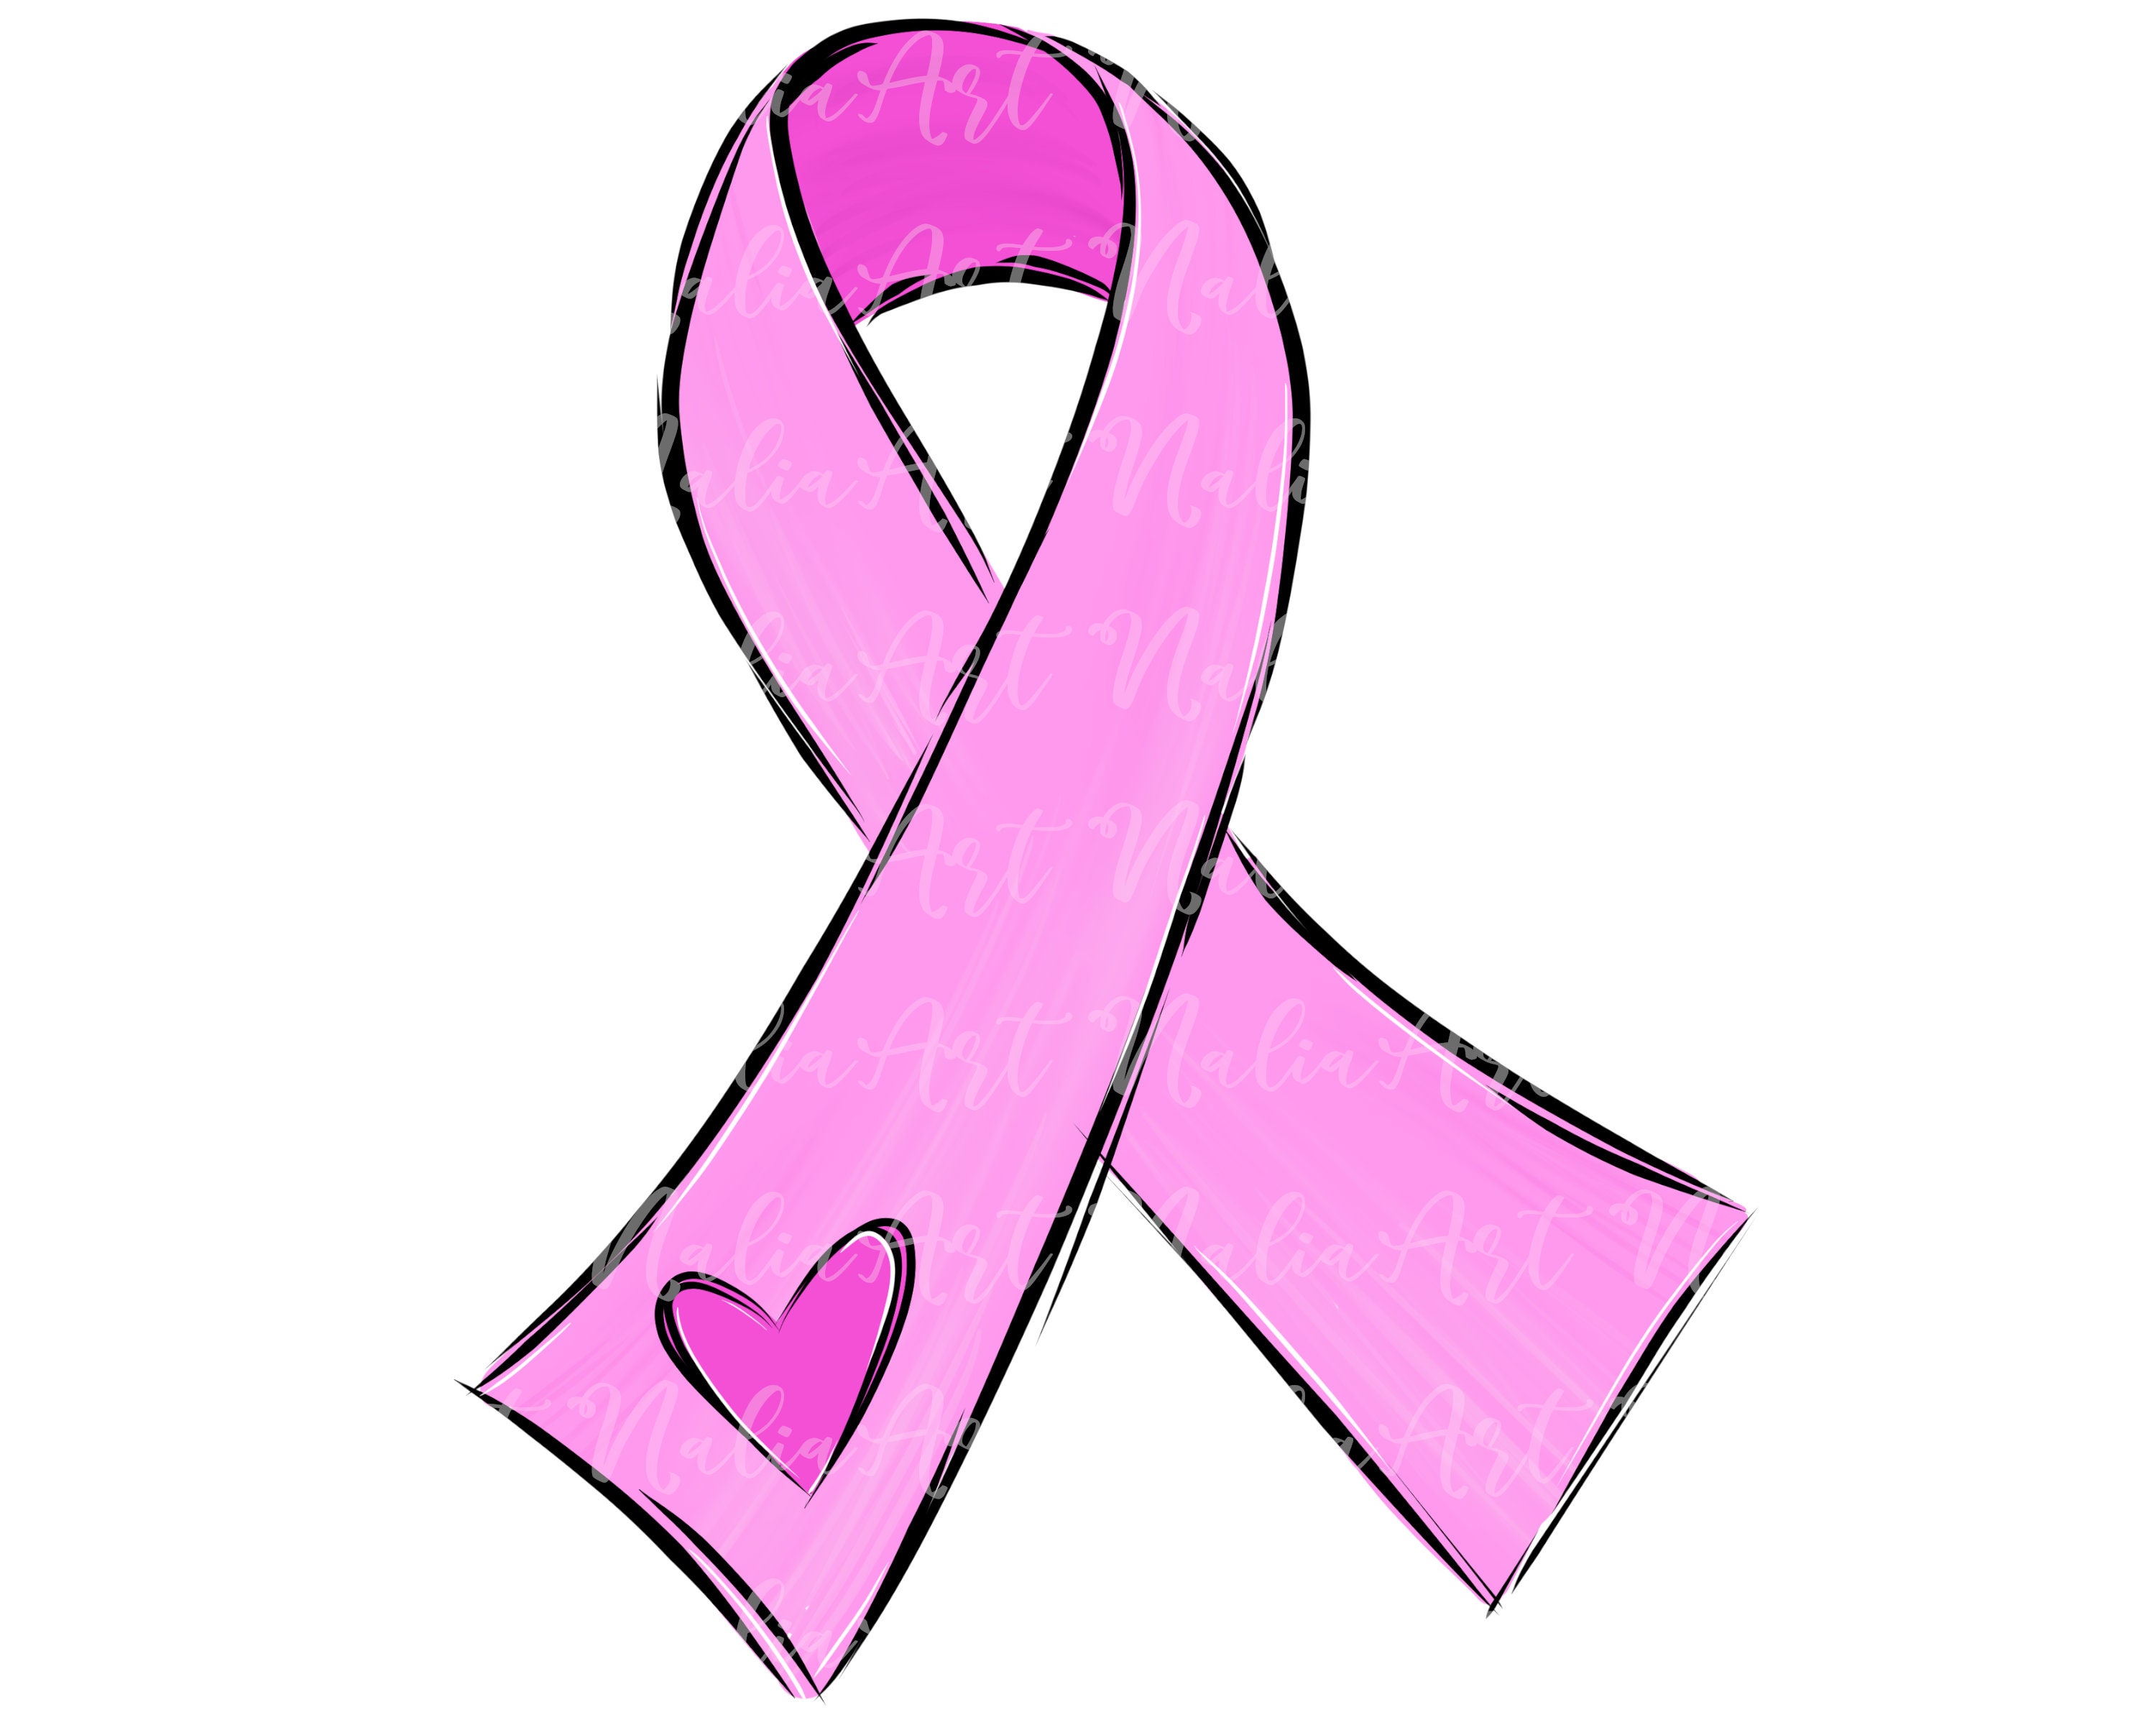 Pink Ribbon Heart Doodle Sublimation PNG Breast Cancer Awareness Printable  Artwork Digital File -  Denmark